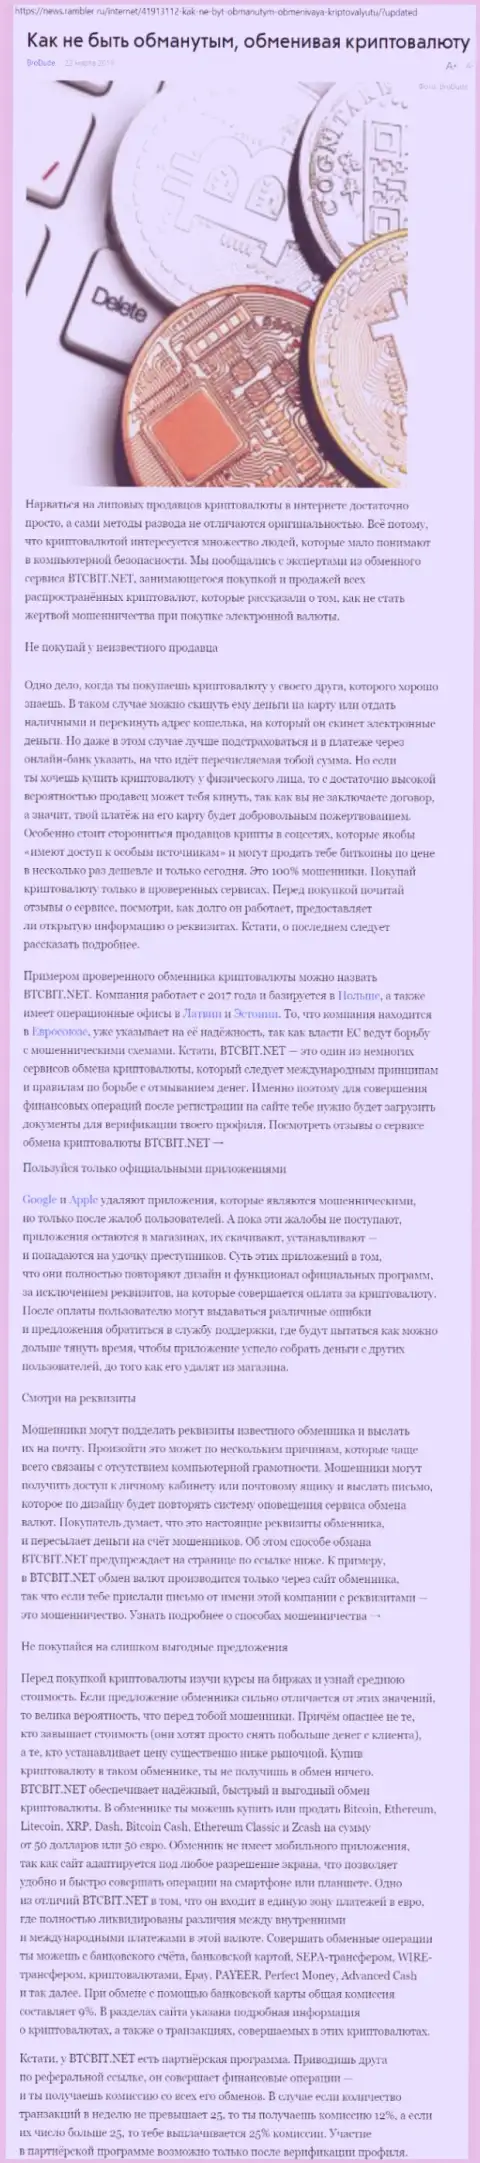 Статья об online обменнике BTCBIT Net на News Rambler Ru